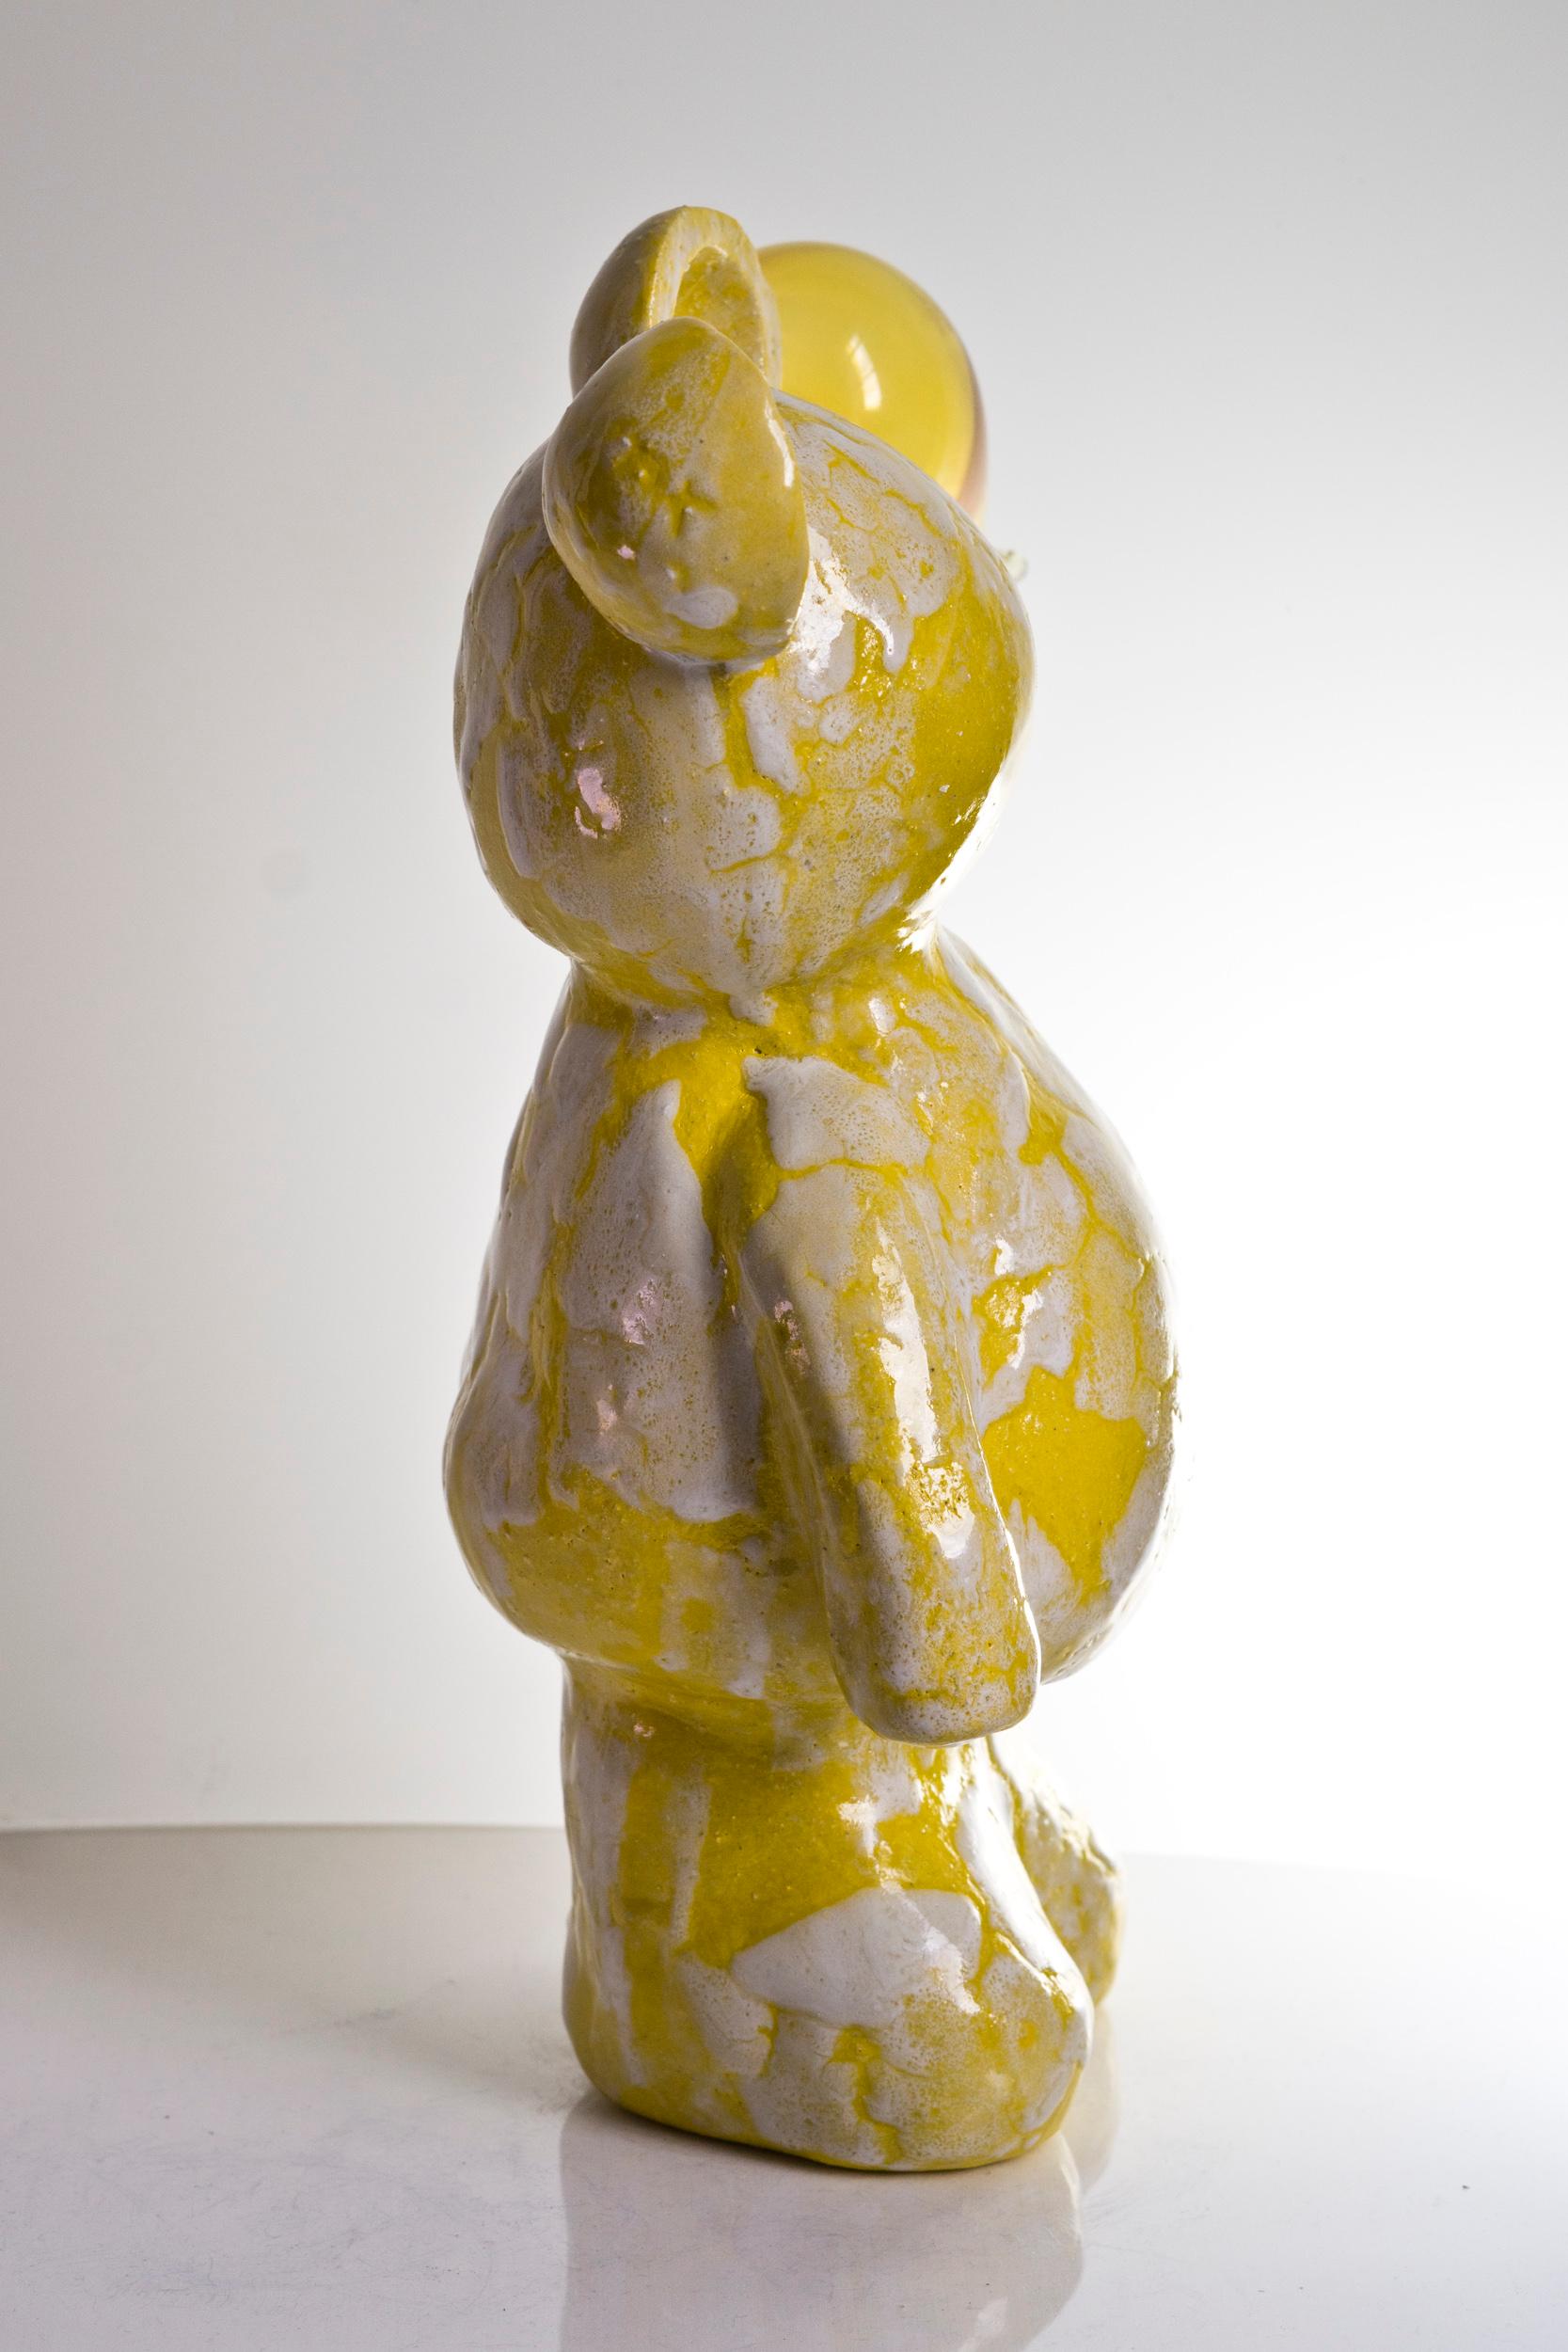 The Optimistic Teddy - Sculpture by Agustina Garrigou